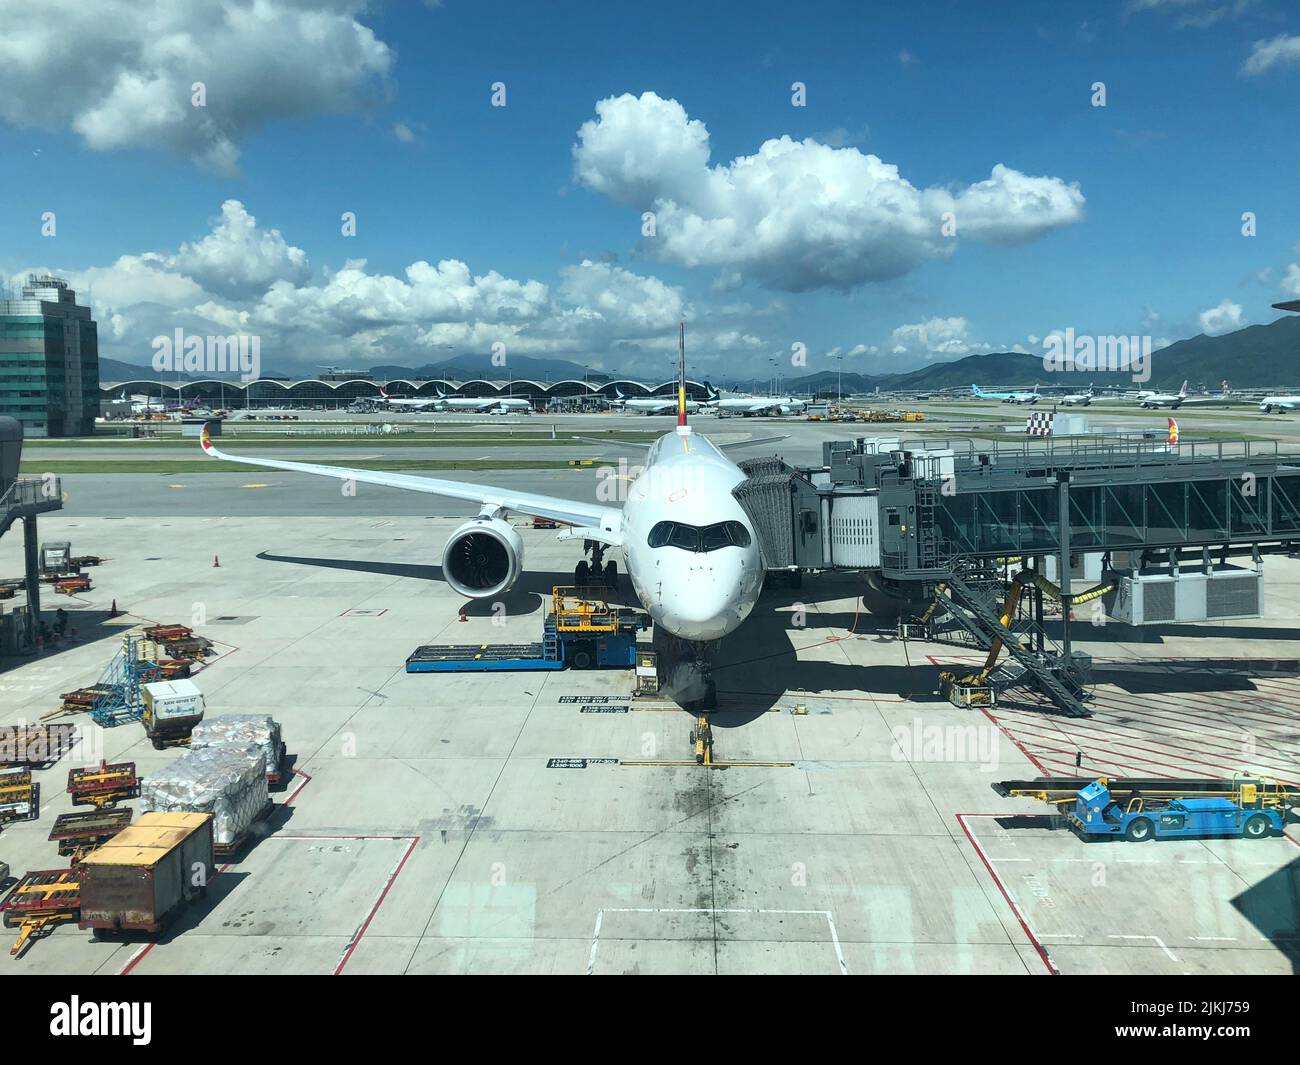 Eine wunderschöne Aufnahme des Airbus 350 von Hong Kong Airlines an einem sonnigen Tag auf den Flughäfen von Hong Kong Stockfoto